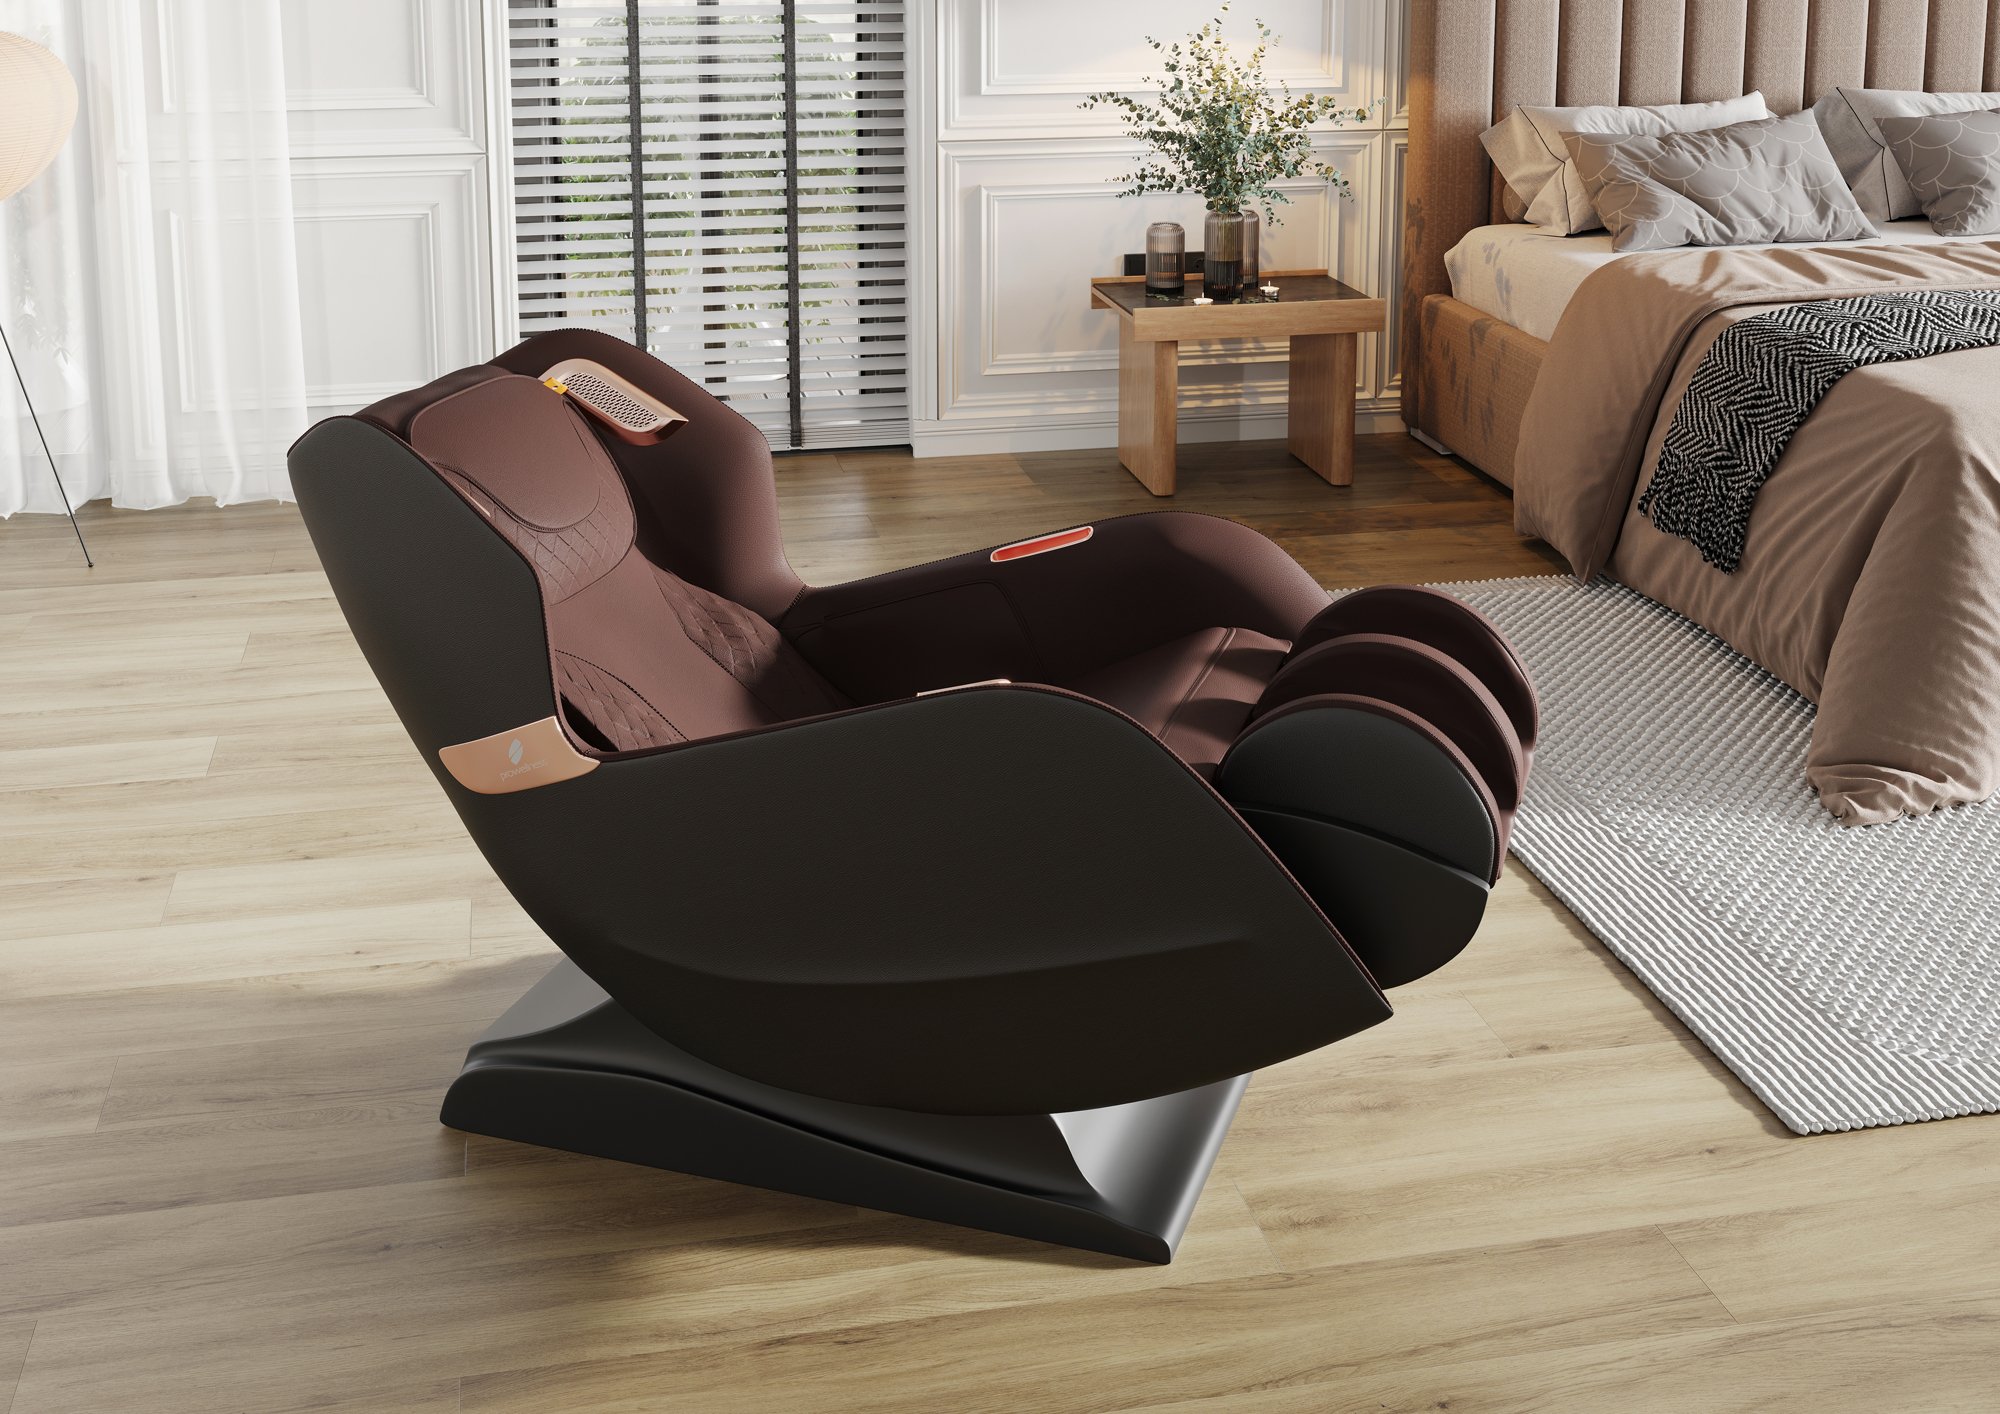 PW430 wirtualna sesja w aranżacji  Model 3D fotela masującego Massage chair 3D model.jpg